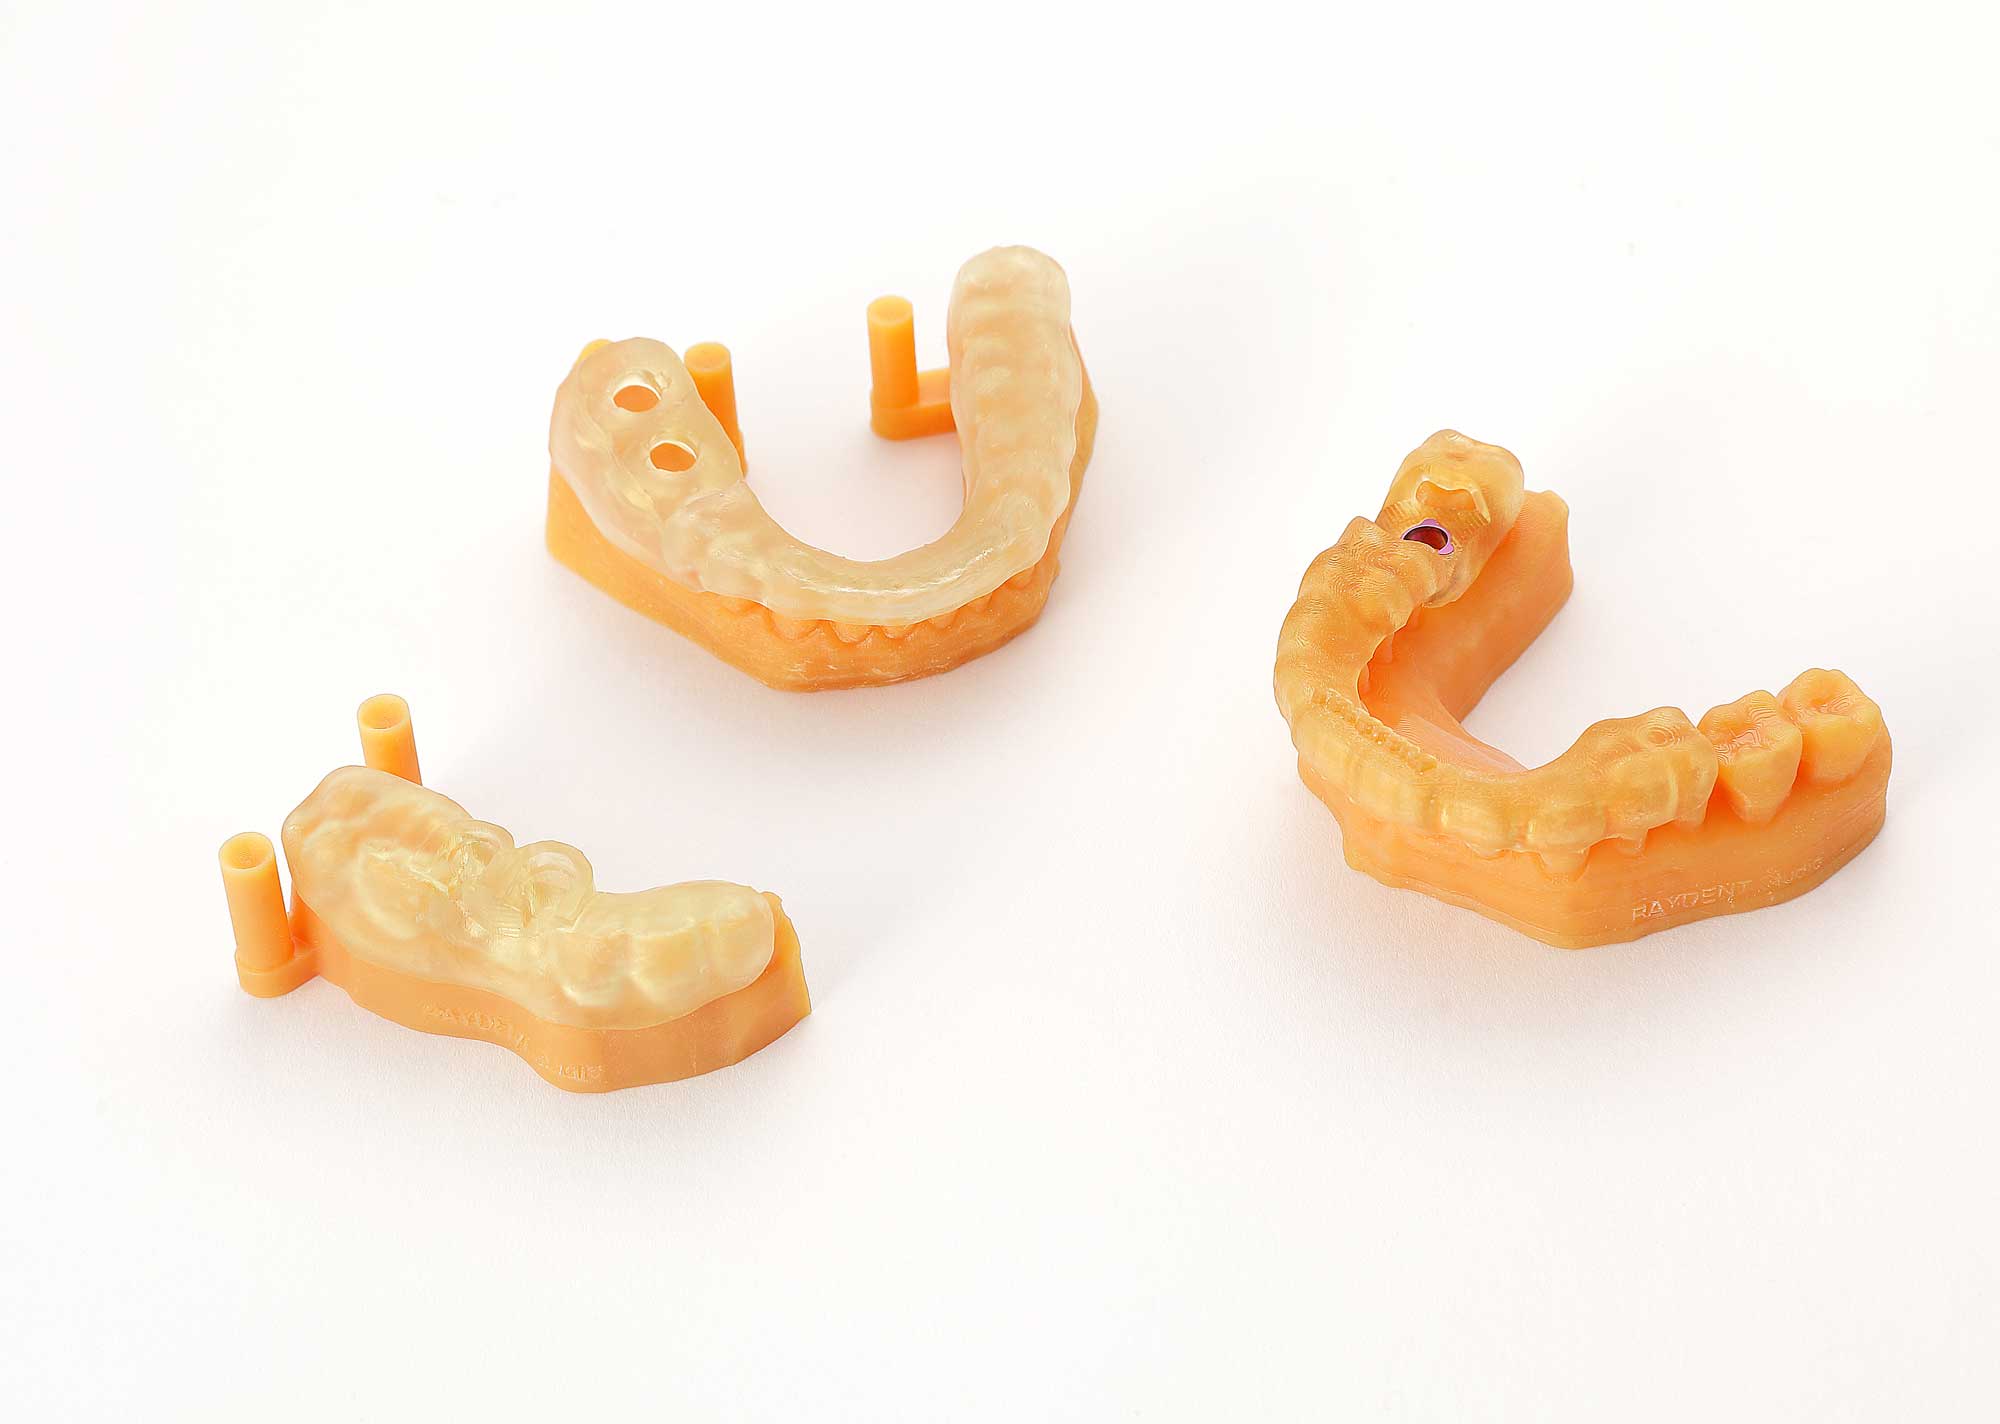 Stomatologiczne szablony chirurgiczne nałożone na modele łuków zębowych